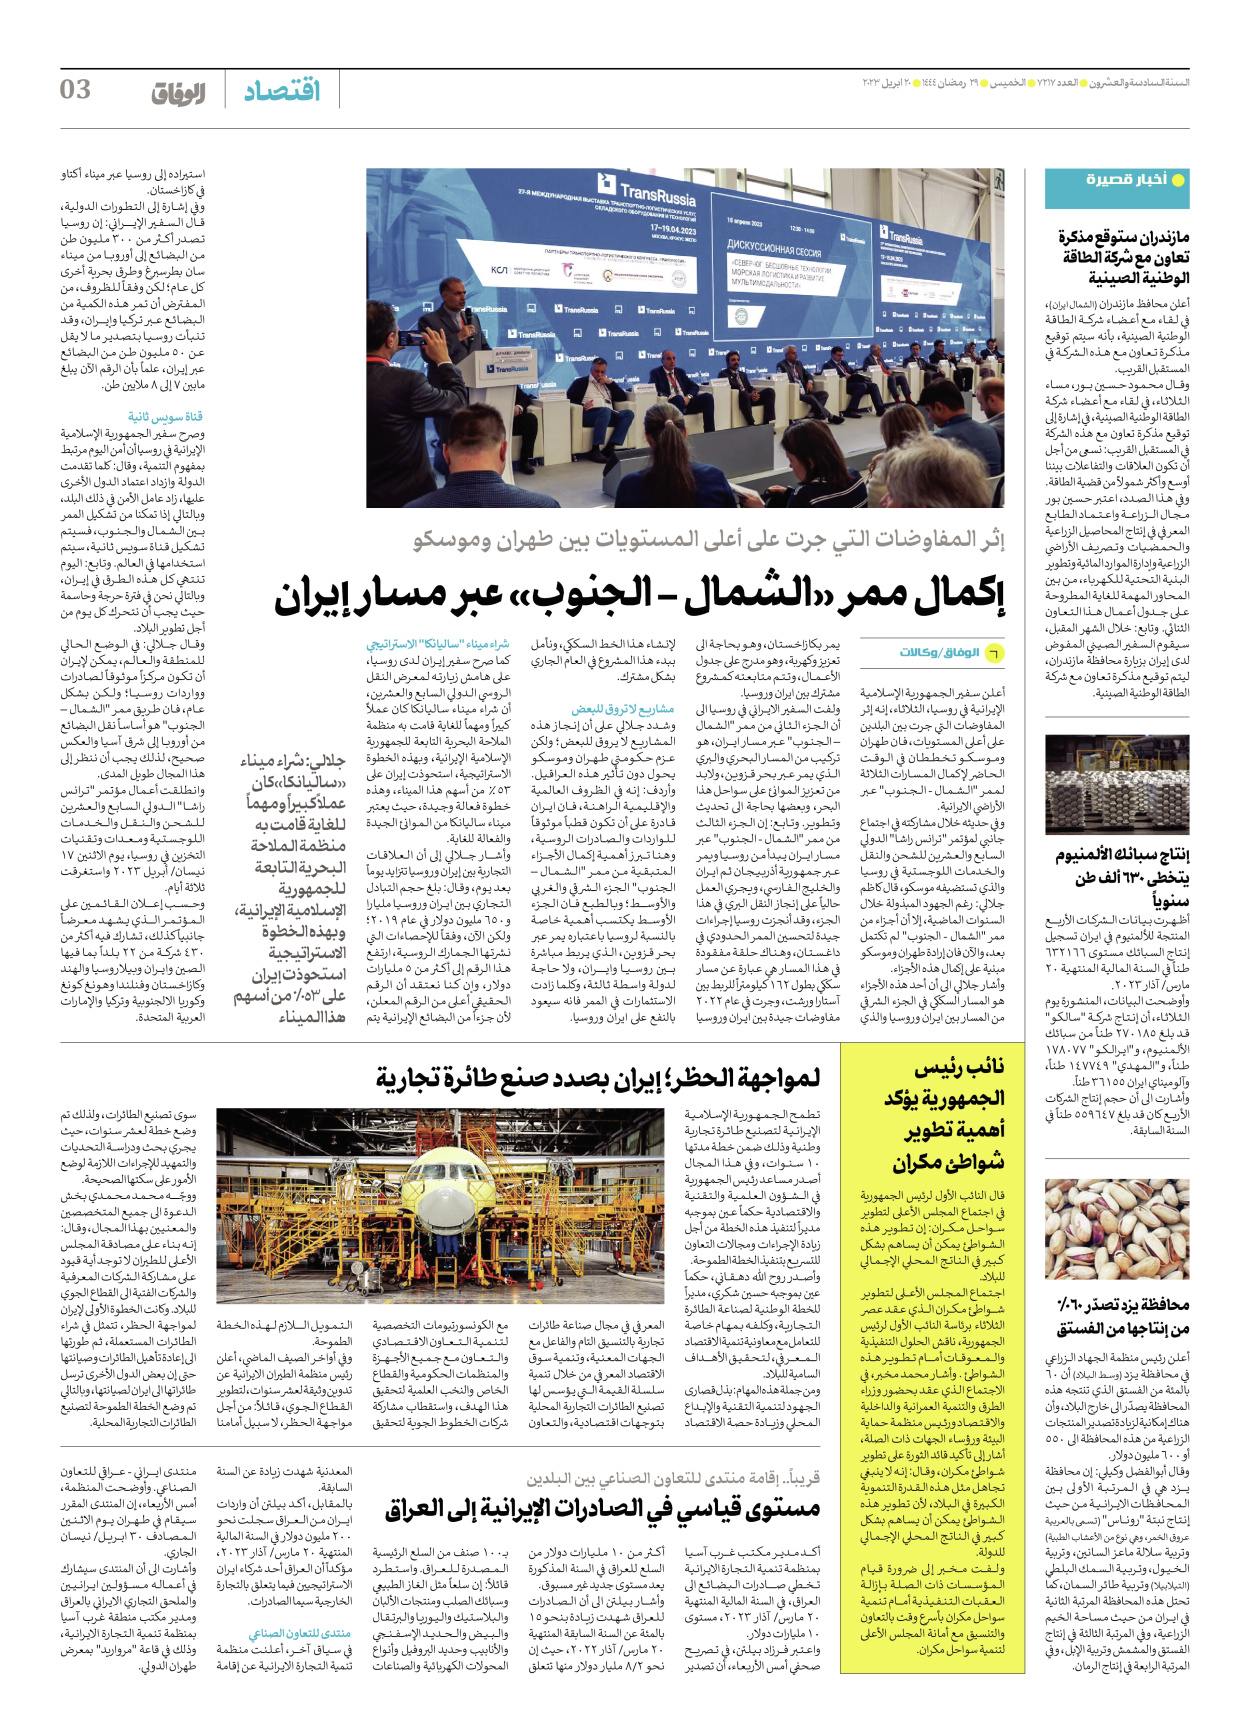 صحیفة ایران الدولیة الوفاق - العدد سبعة آلاف ومائتان وسبعة عشر - ٢٠ أبريل ٢٠٢٣ - الصفحة ۳